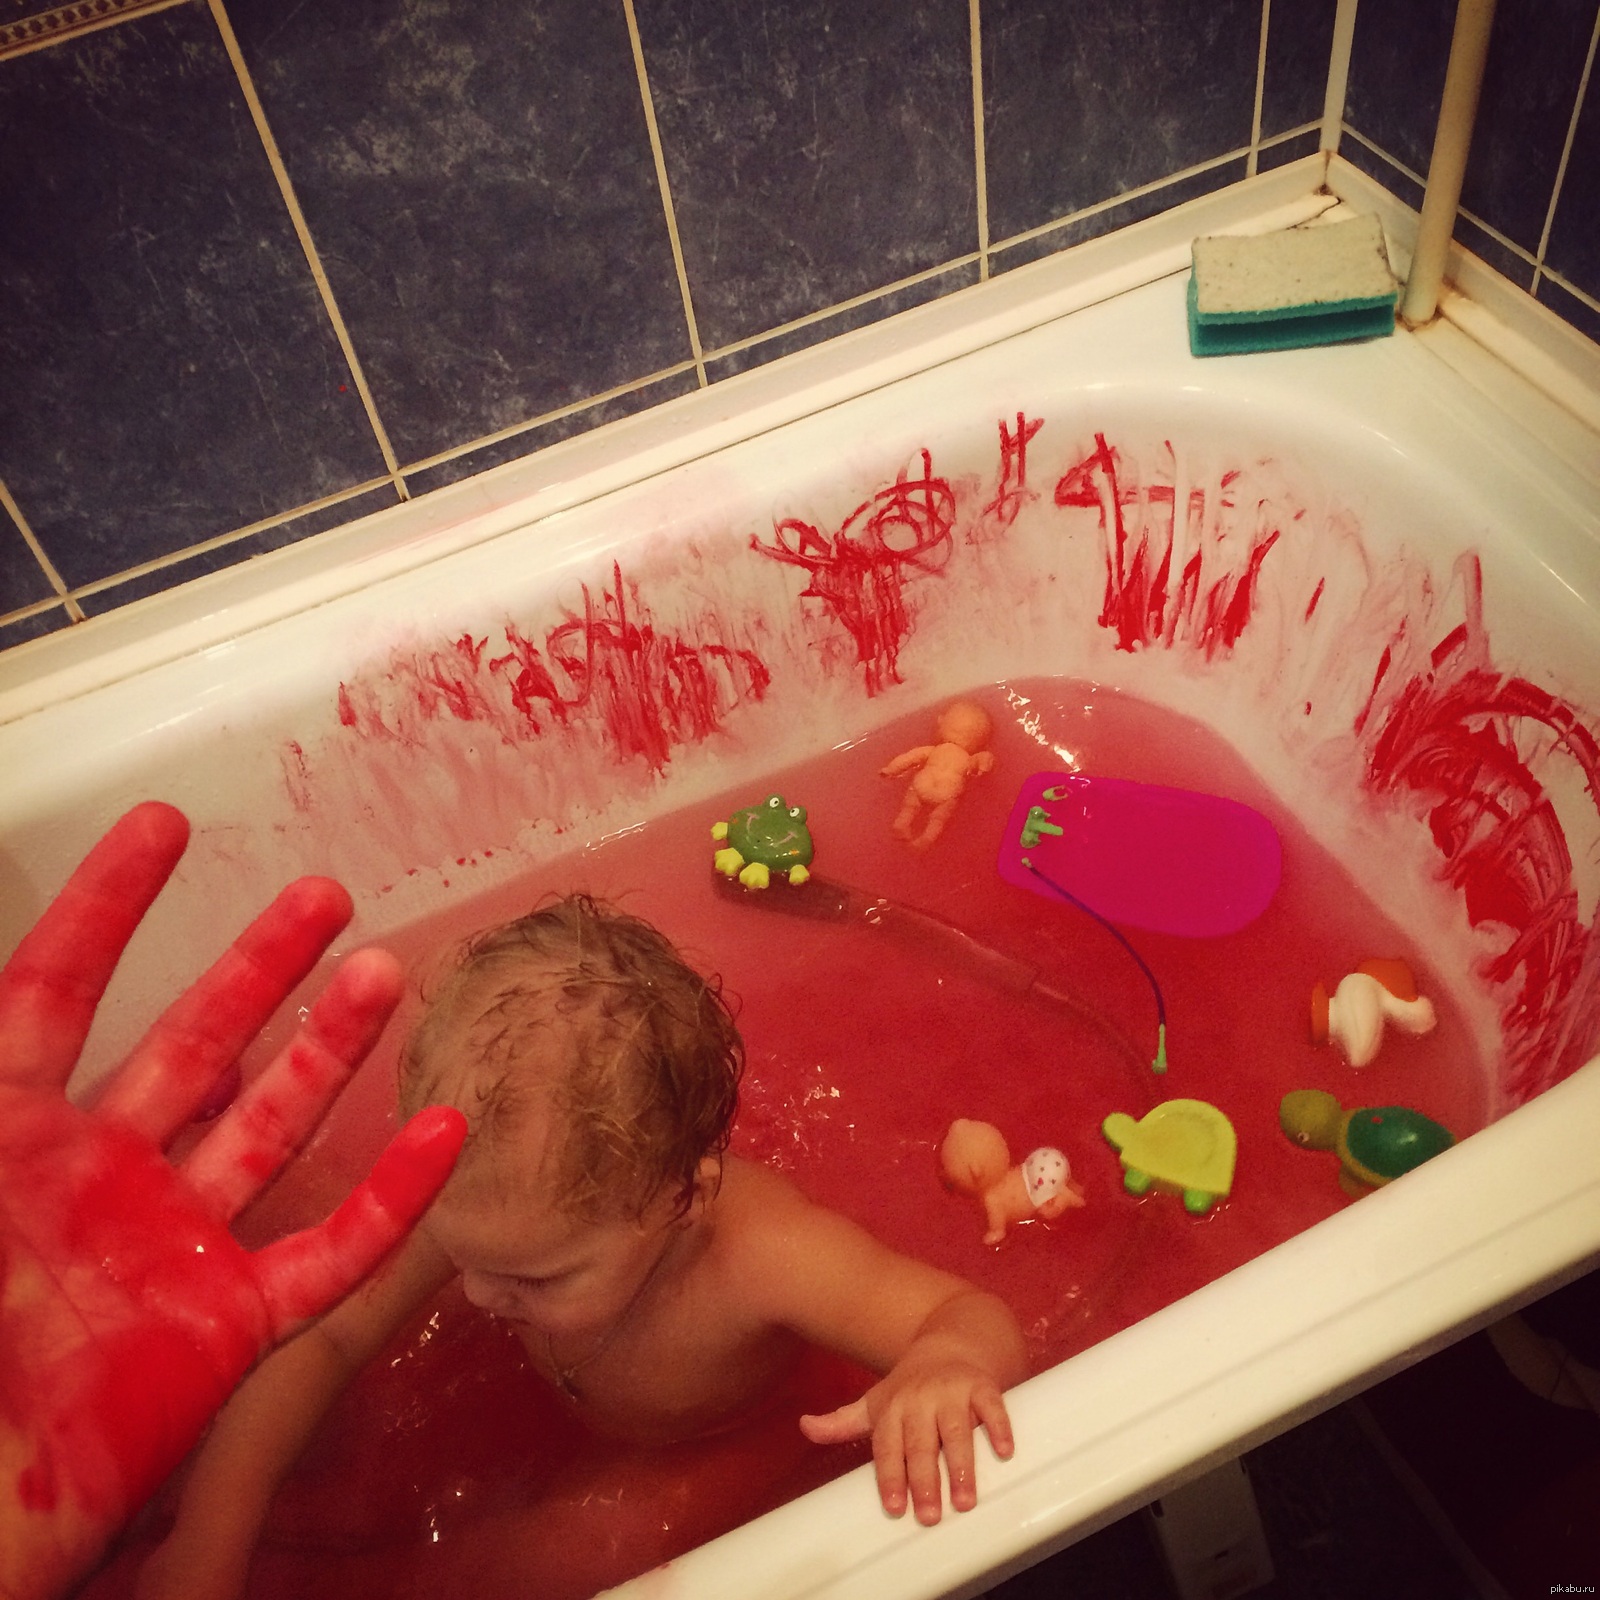 Купаться в ванной во время месячных. Детишки в ванной. Человек в кровавой ванне.